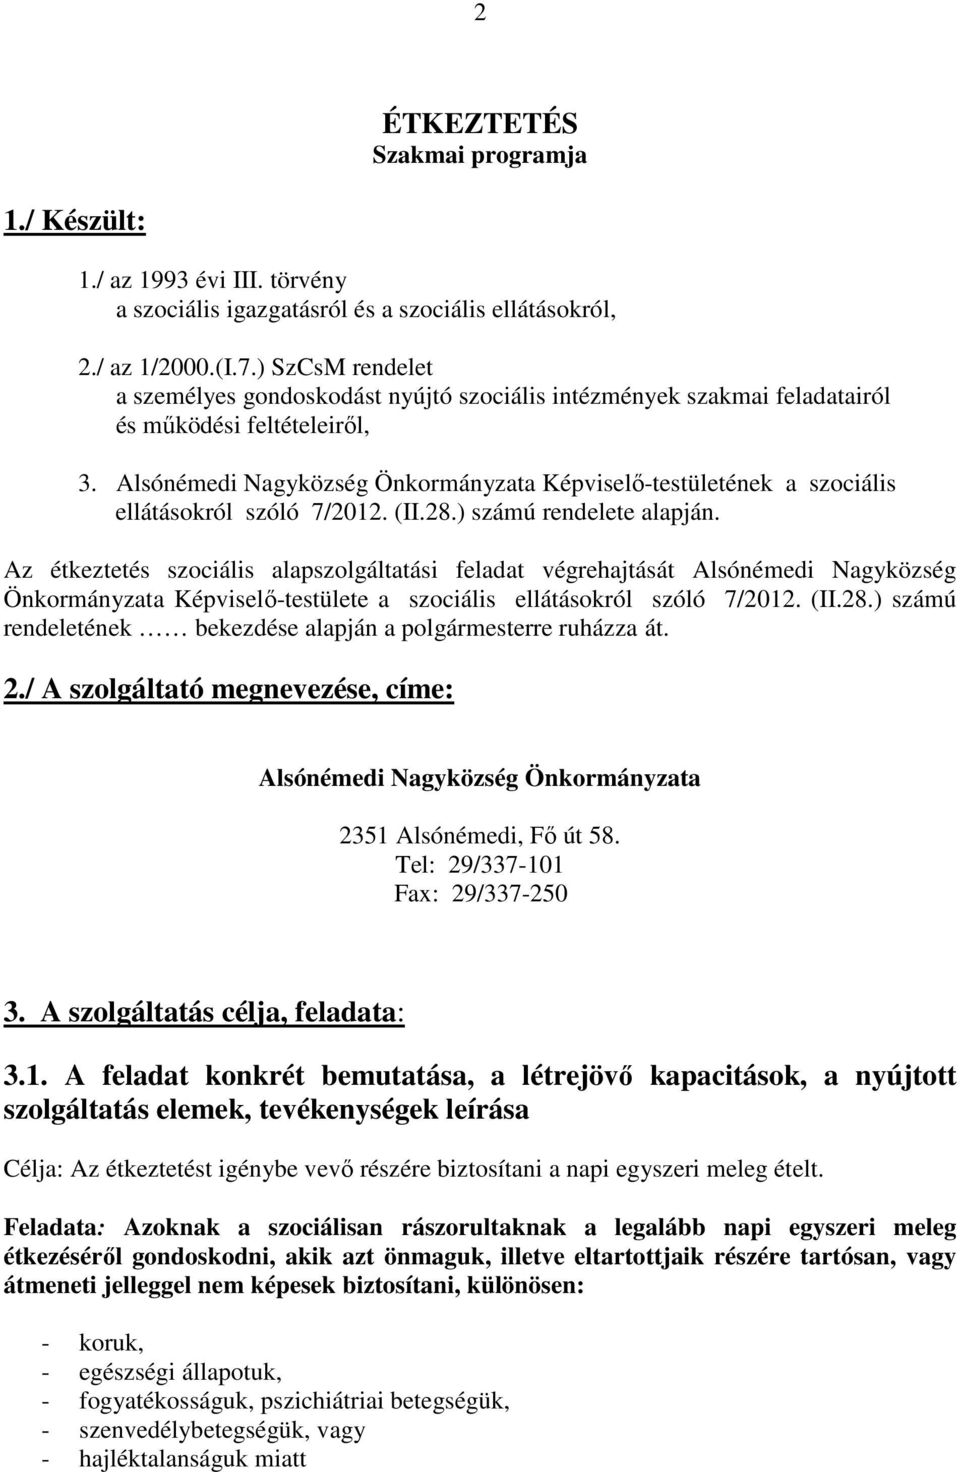 Alsónémedi Nagyközség Önkormányzata Képviselı-testületének a szociális ellátásokról szóló 7/2012. (II.28.) számú rendelete alapján.